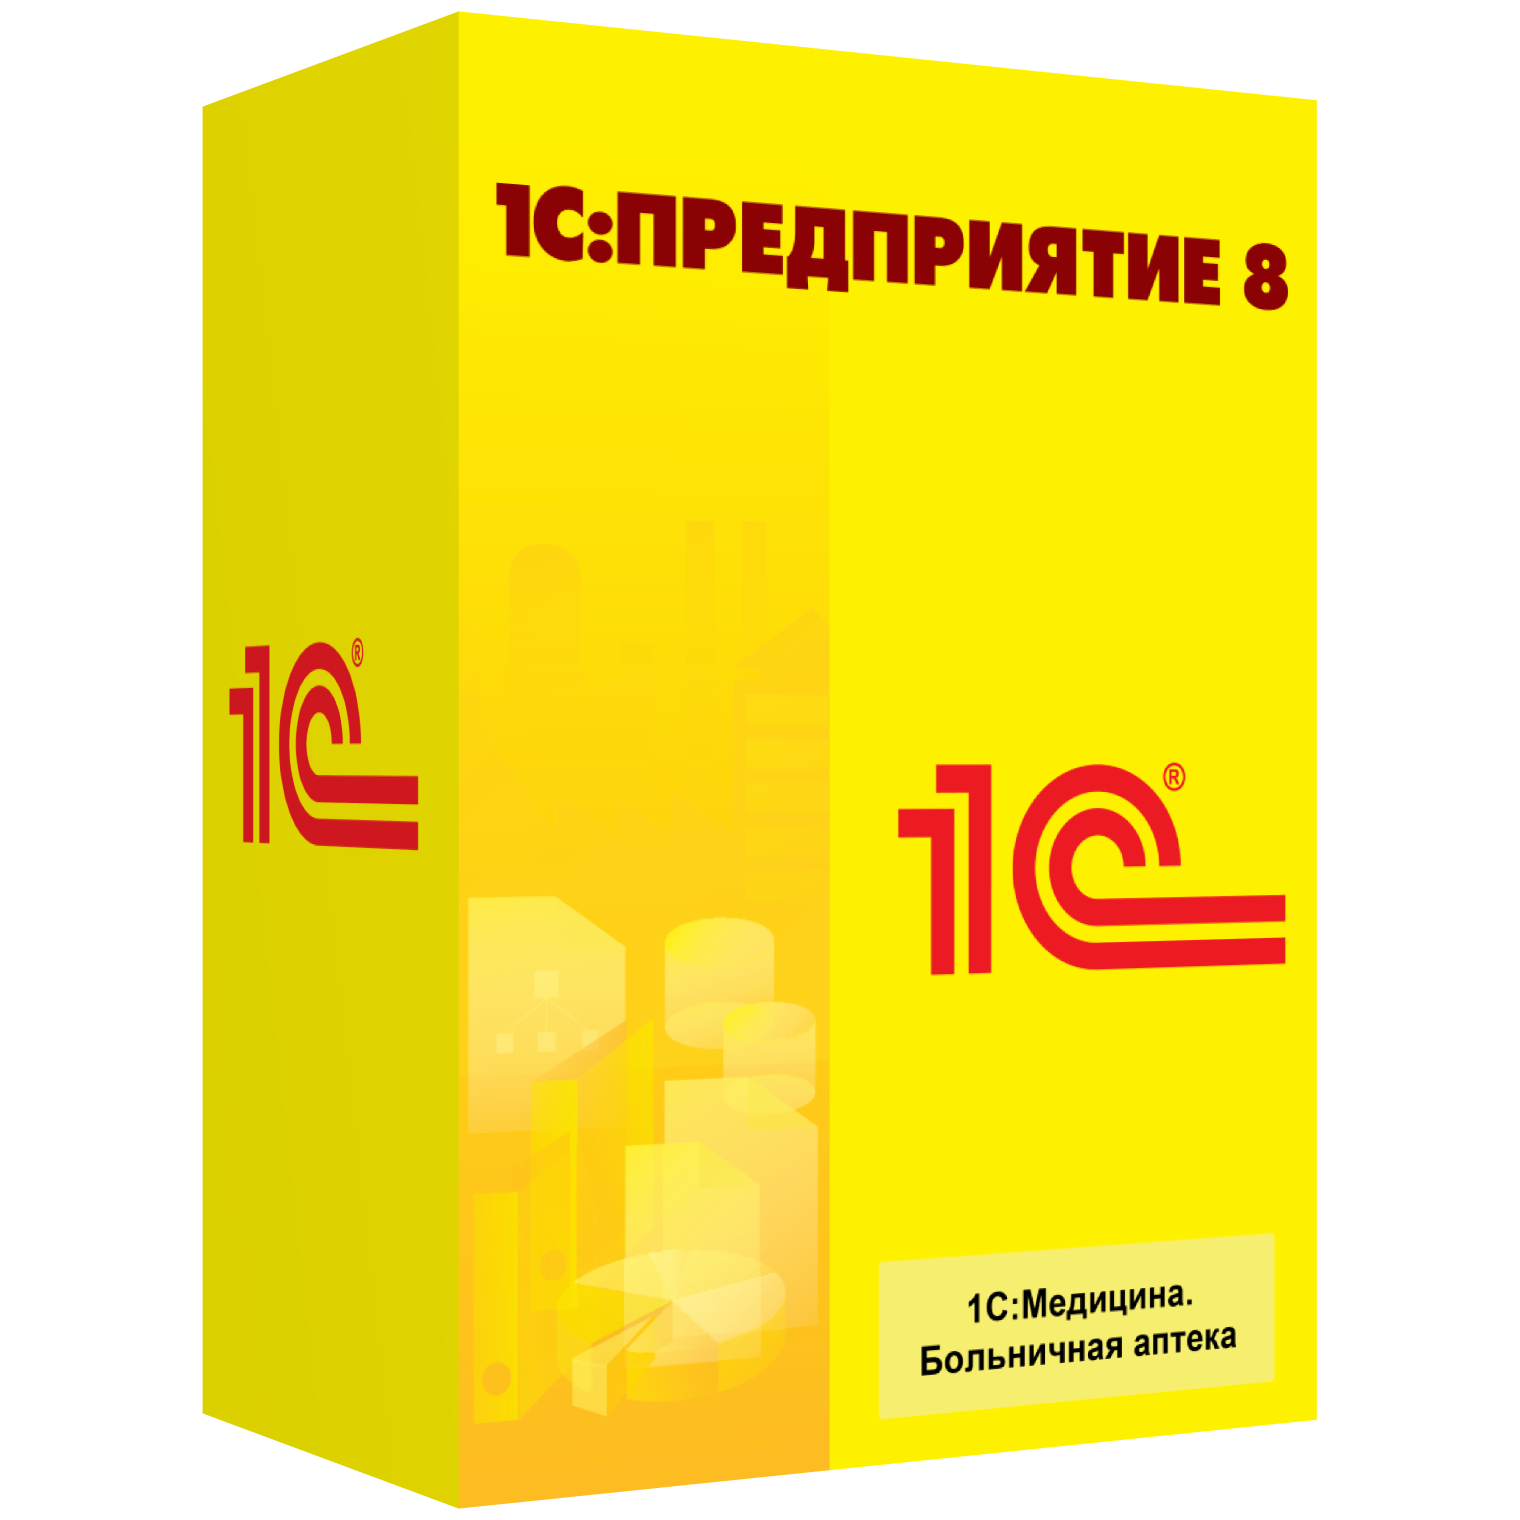 1CP8_Medicine_Bolnichnaya_apteka_left_bez otragenia.png